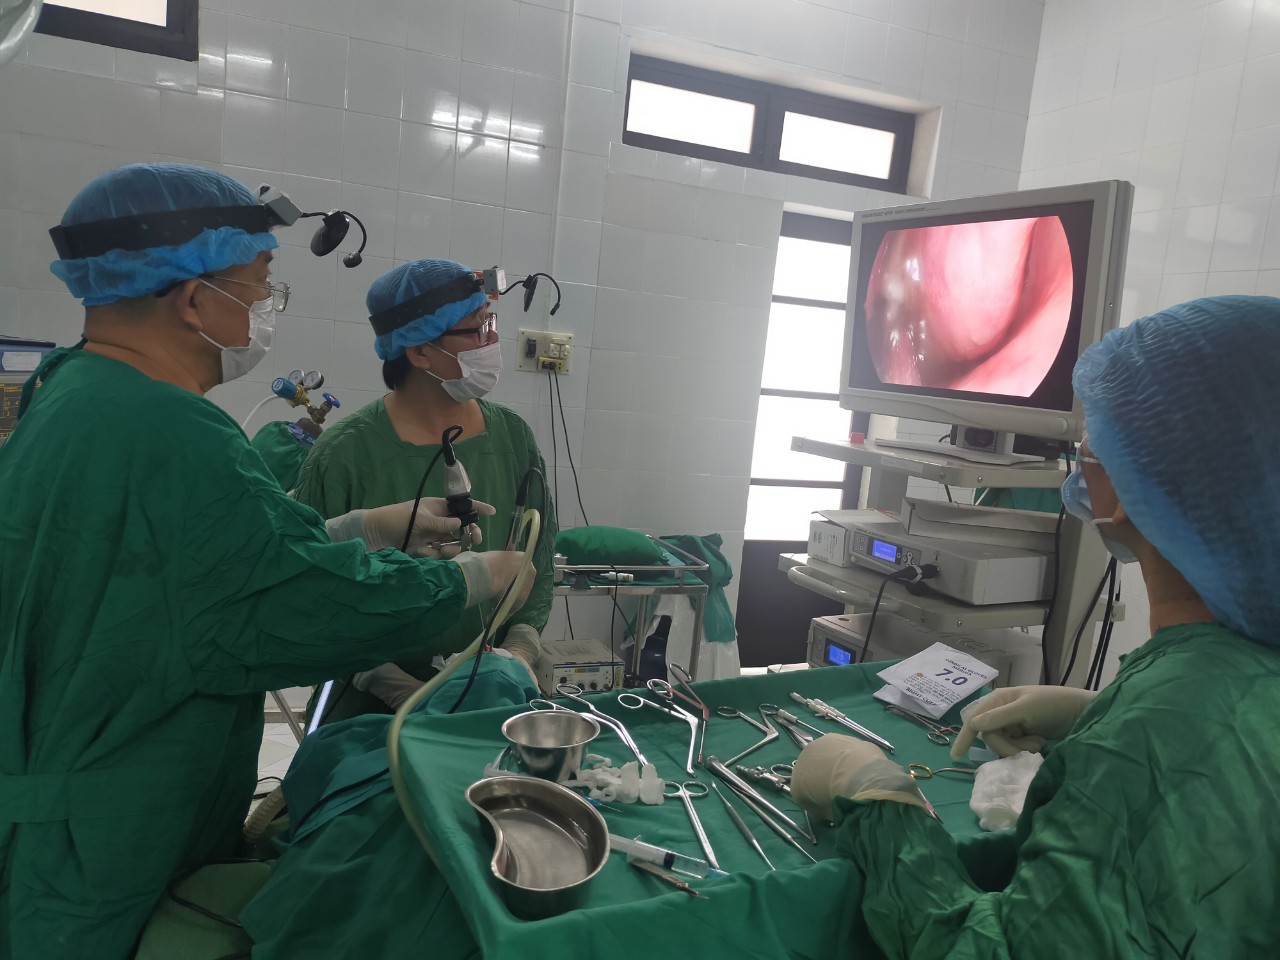 Phòng y tế Hương Trà đã được nâng cấp và trang bị đầy đủ các thiết bị y tế hiện đại nhất để phục vụ cho người dân. Đội ngũ y bác sĩ và y tế tại đây luôn chăm sóc tận tình và đảm bảo sức khỏe cho mọi người trong cả khu vực.